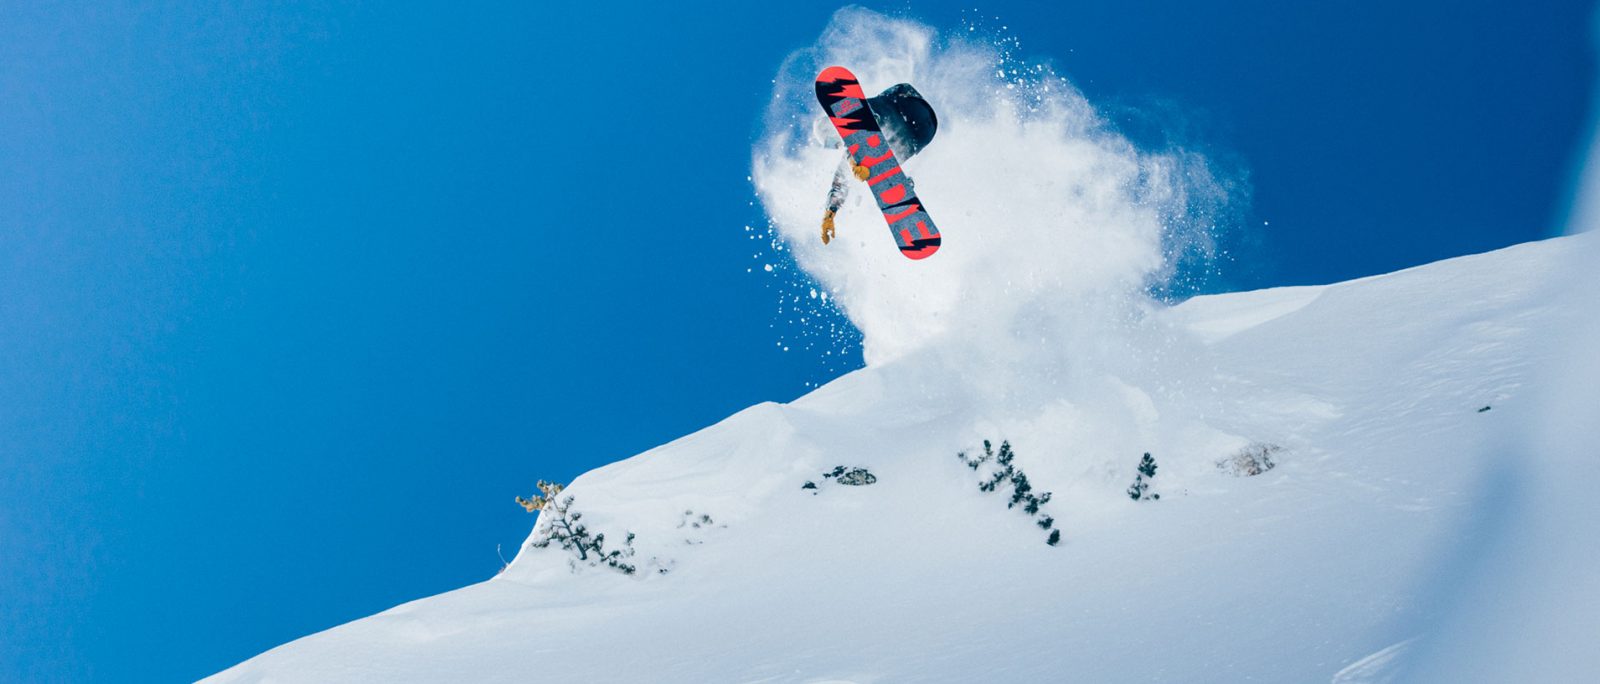 The Best Women’s Snowboard Designs